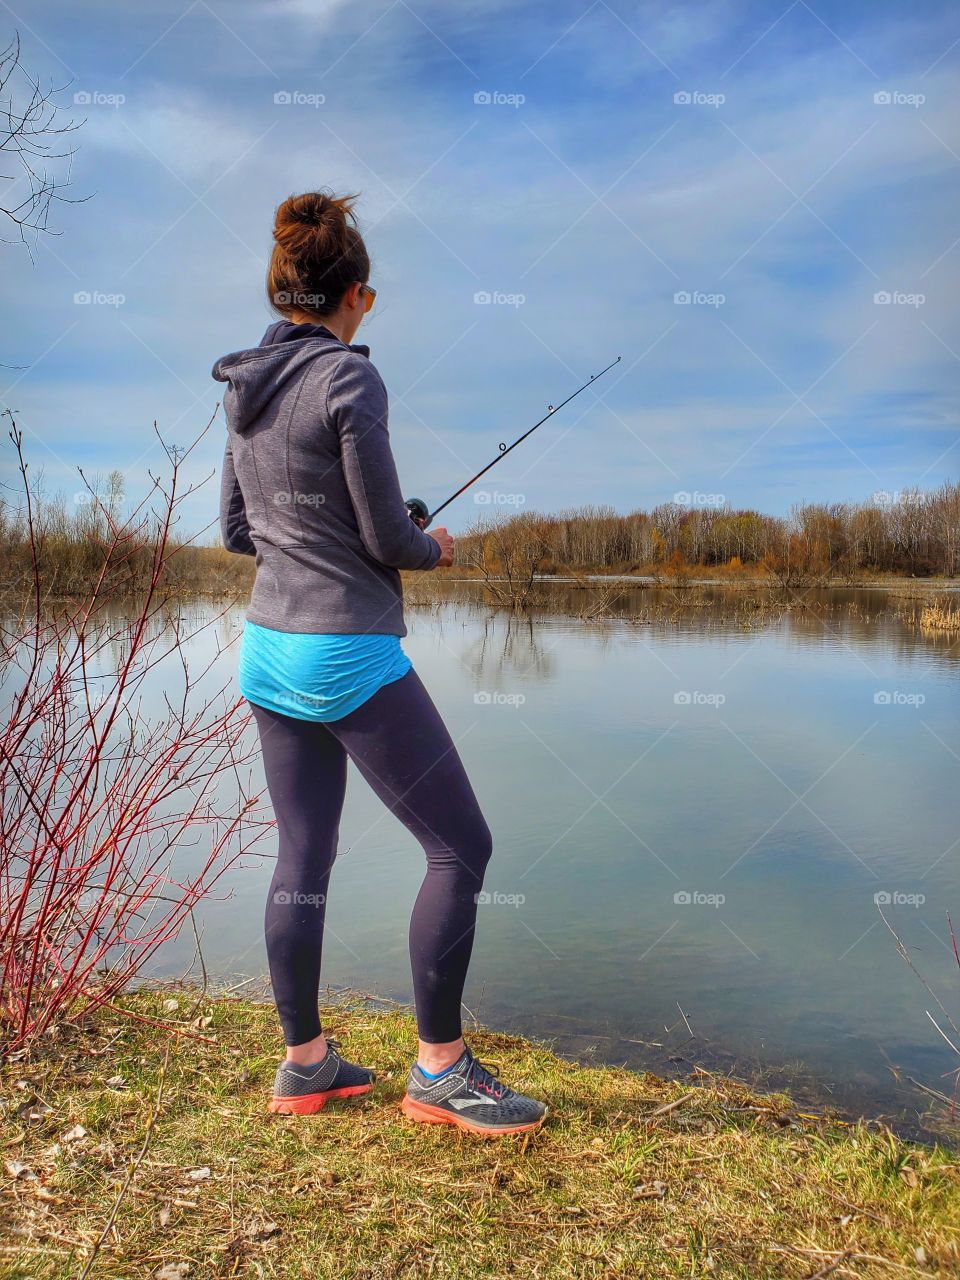 fishing in a hoodie